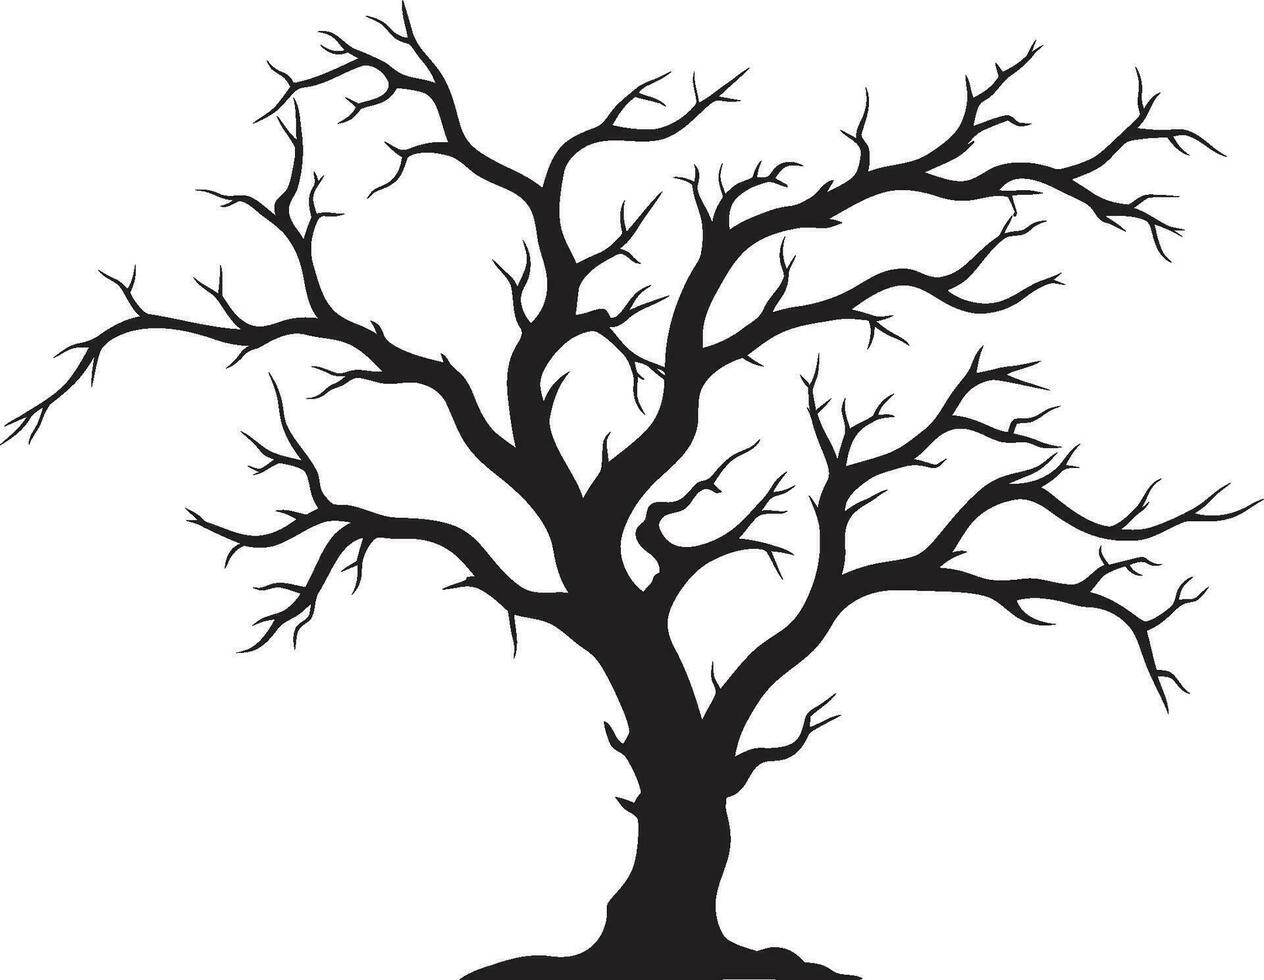 oscuridad de decaer representación de un sin vida árbol en negro eterno tranquilidad monocromo despedida a naturalezas belleza vector